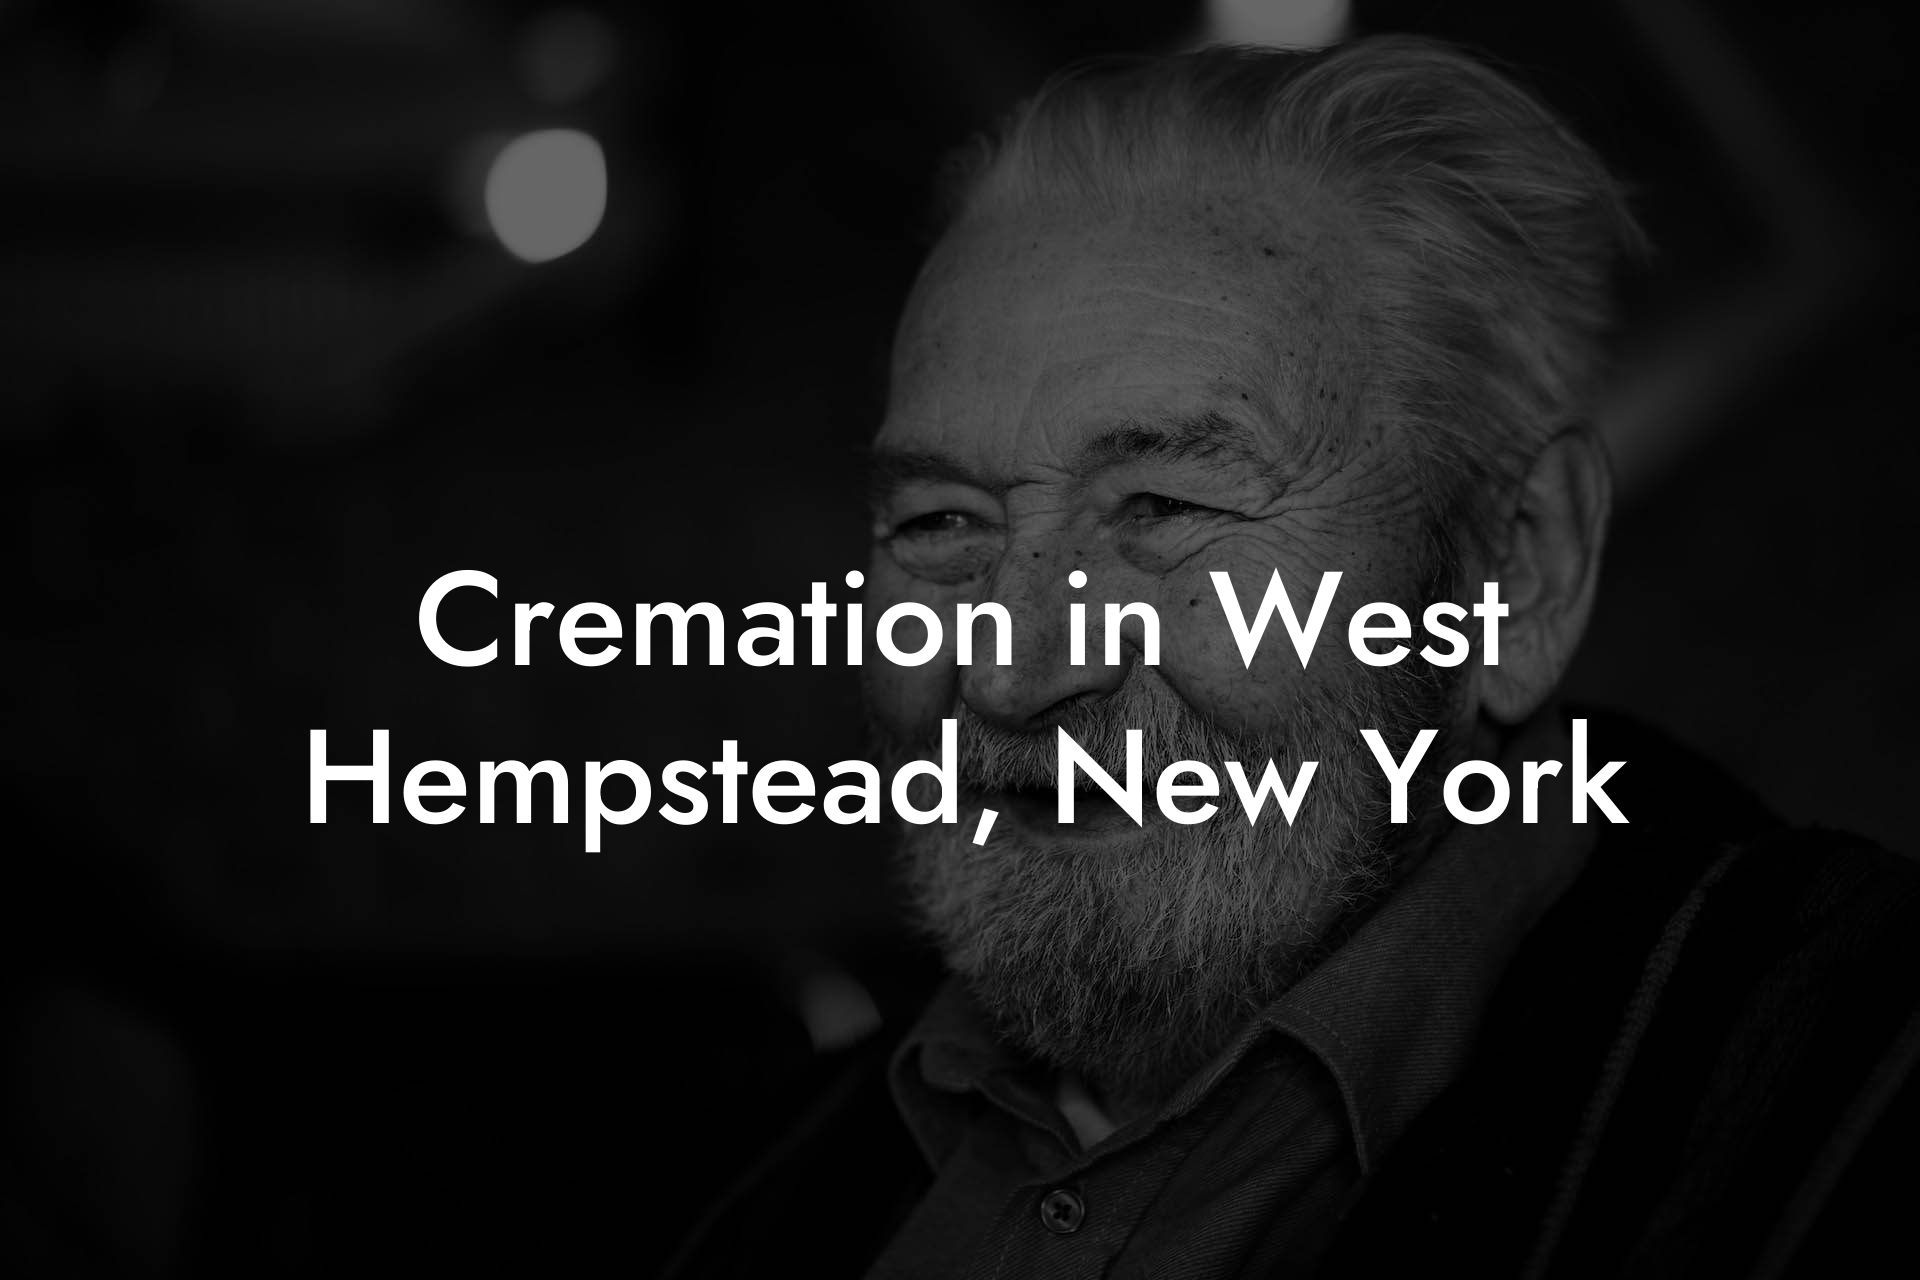 Cremation in West Hempstead, New York